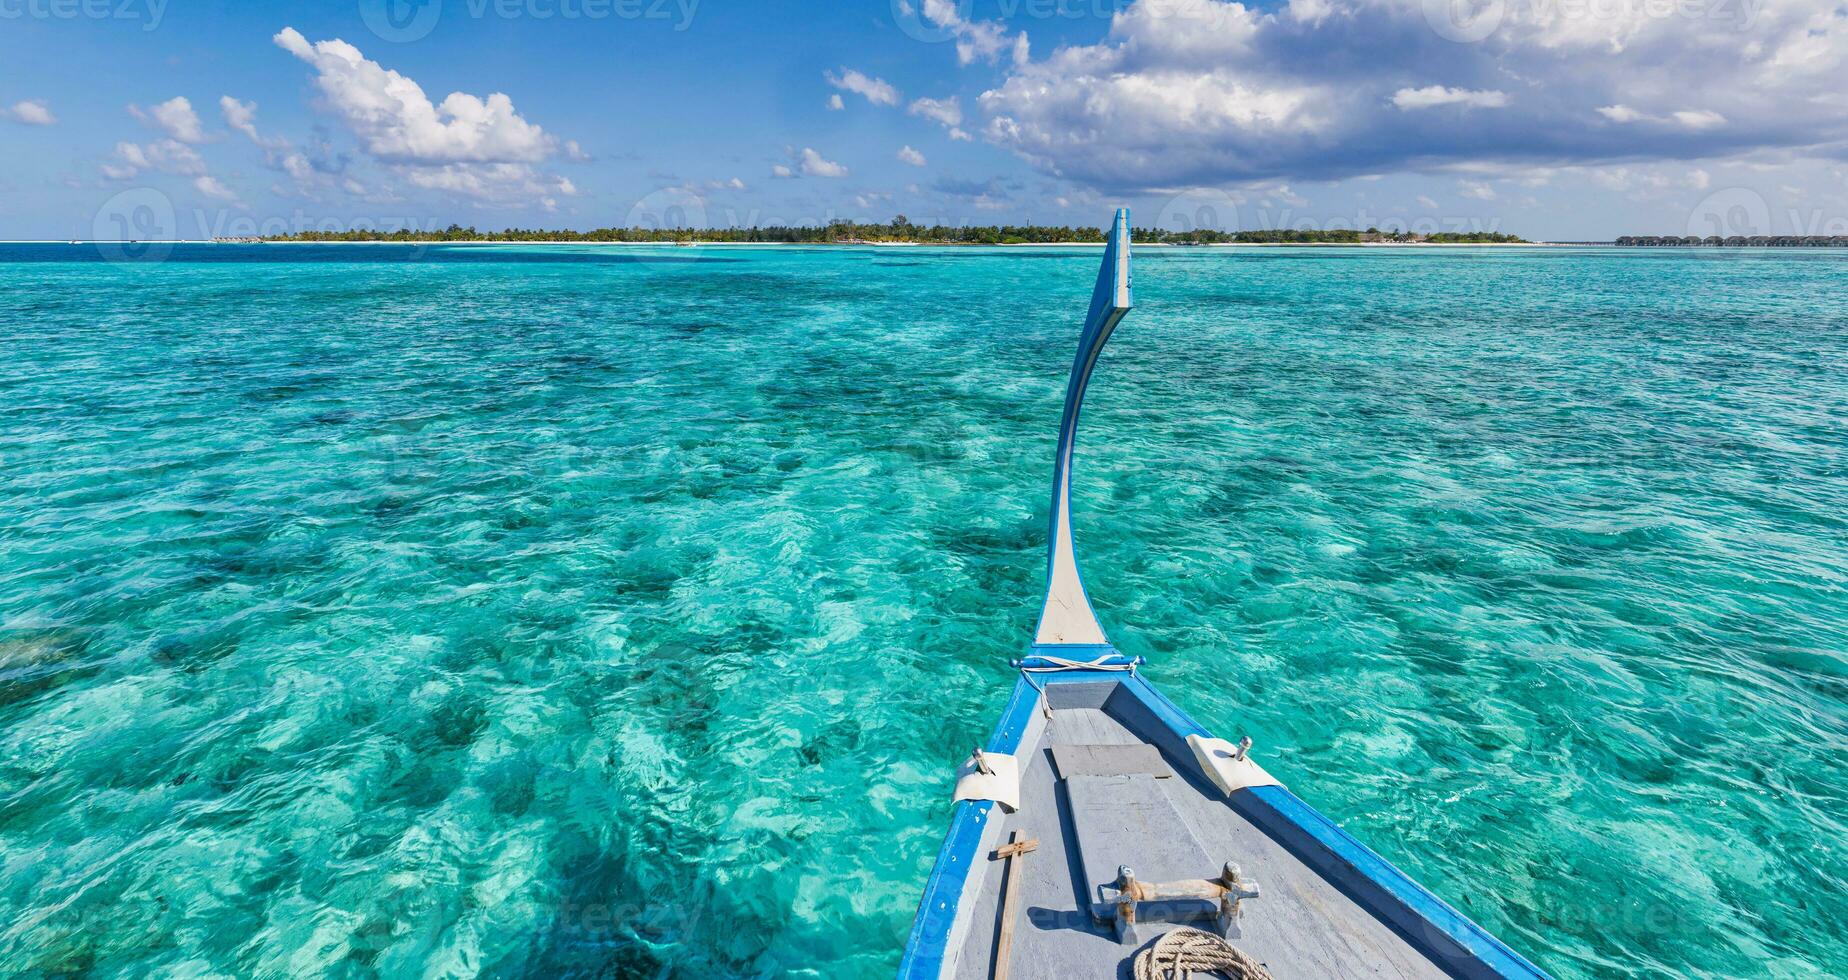 Increíble diseño de playa de Maldivas. frente de dhoni de barco tradicional de maldivas. mar azul perfecto con laguna oceánica. concepto de paraíso tropical de lujo. hermoso paisaje de viajes de vacaciones. laguna del océano tranquilo foto